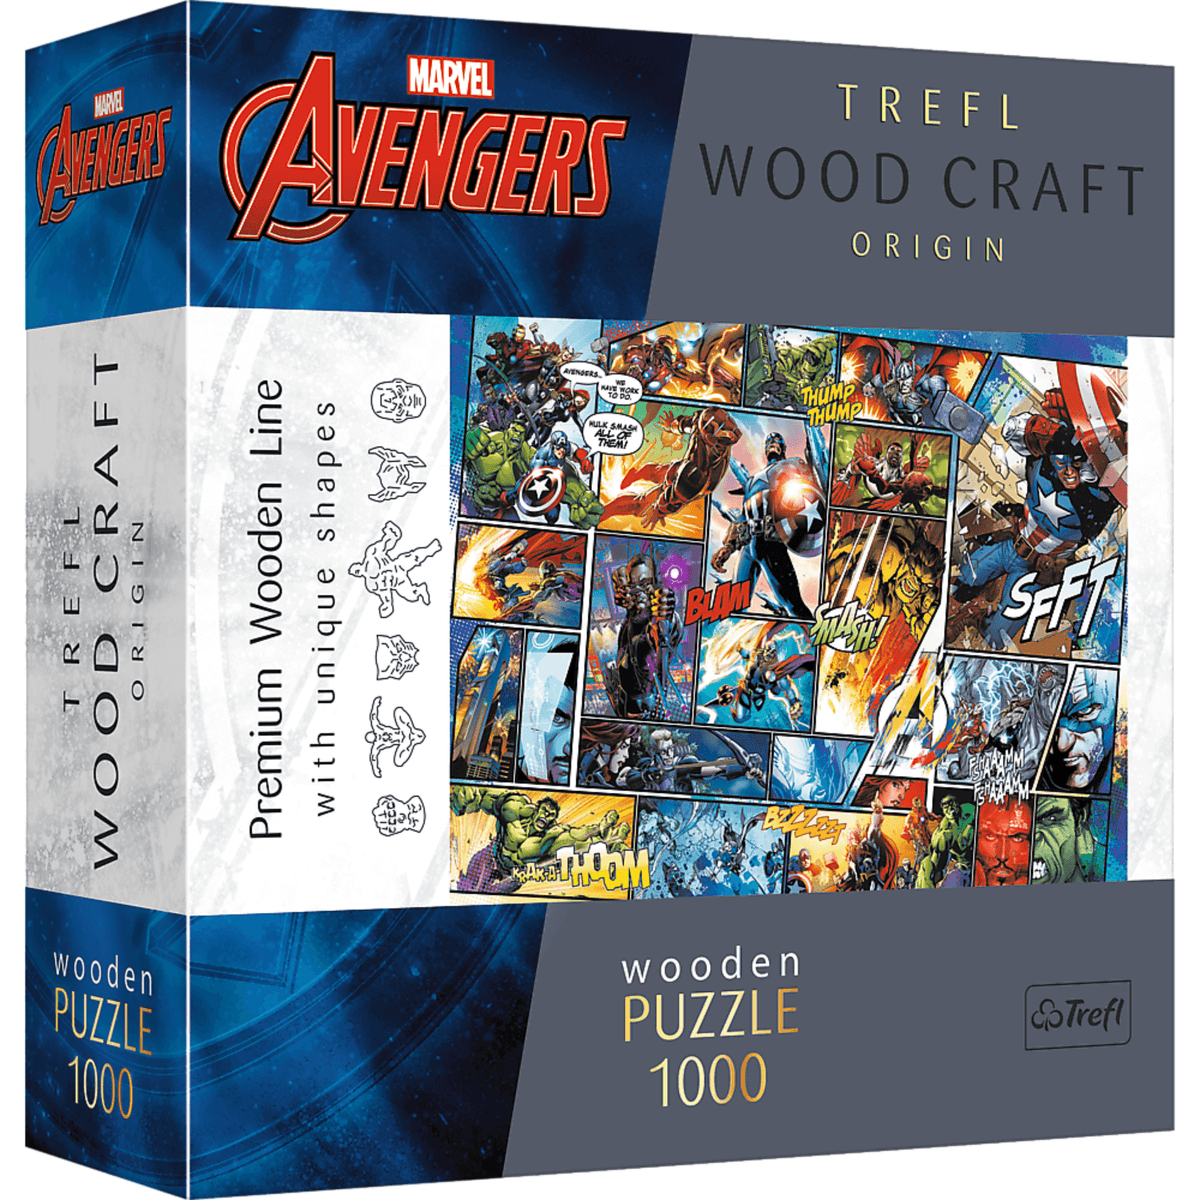 MARVEL | Avengers Comic Story | Wooden Jigsaw Puzzle 1000-Wooden Jigsaw Puzzle-TREFL--